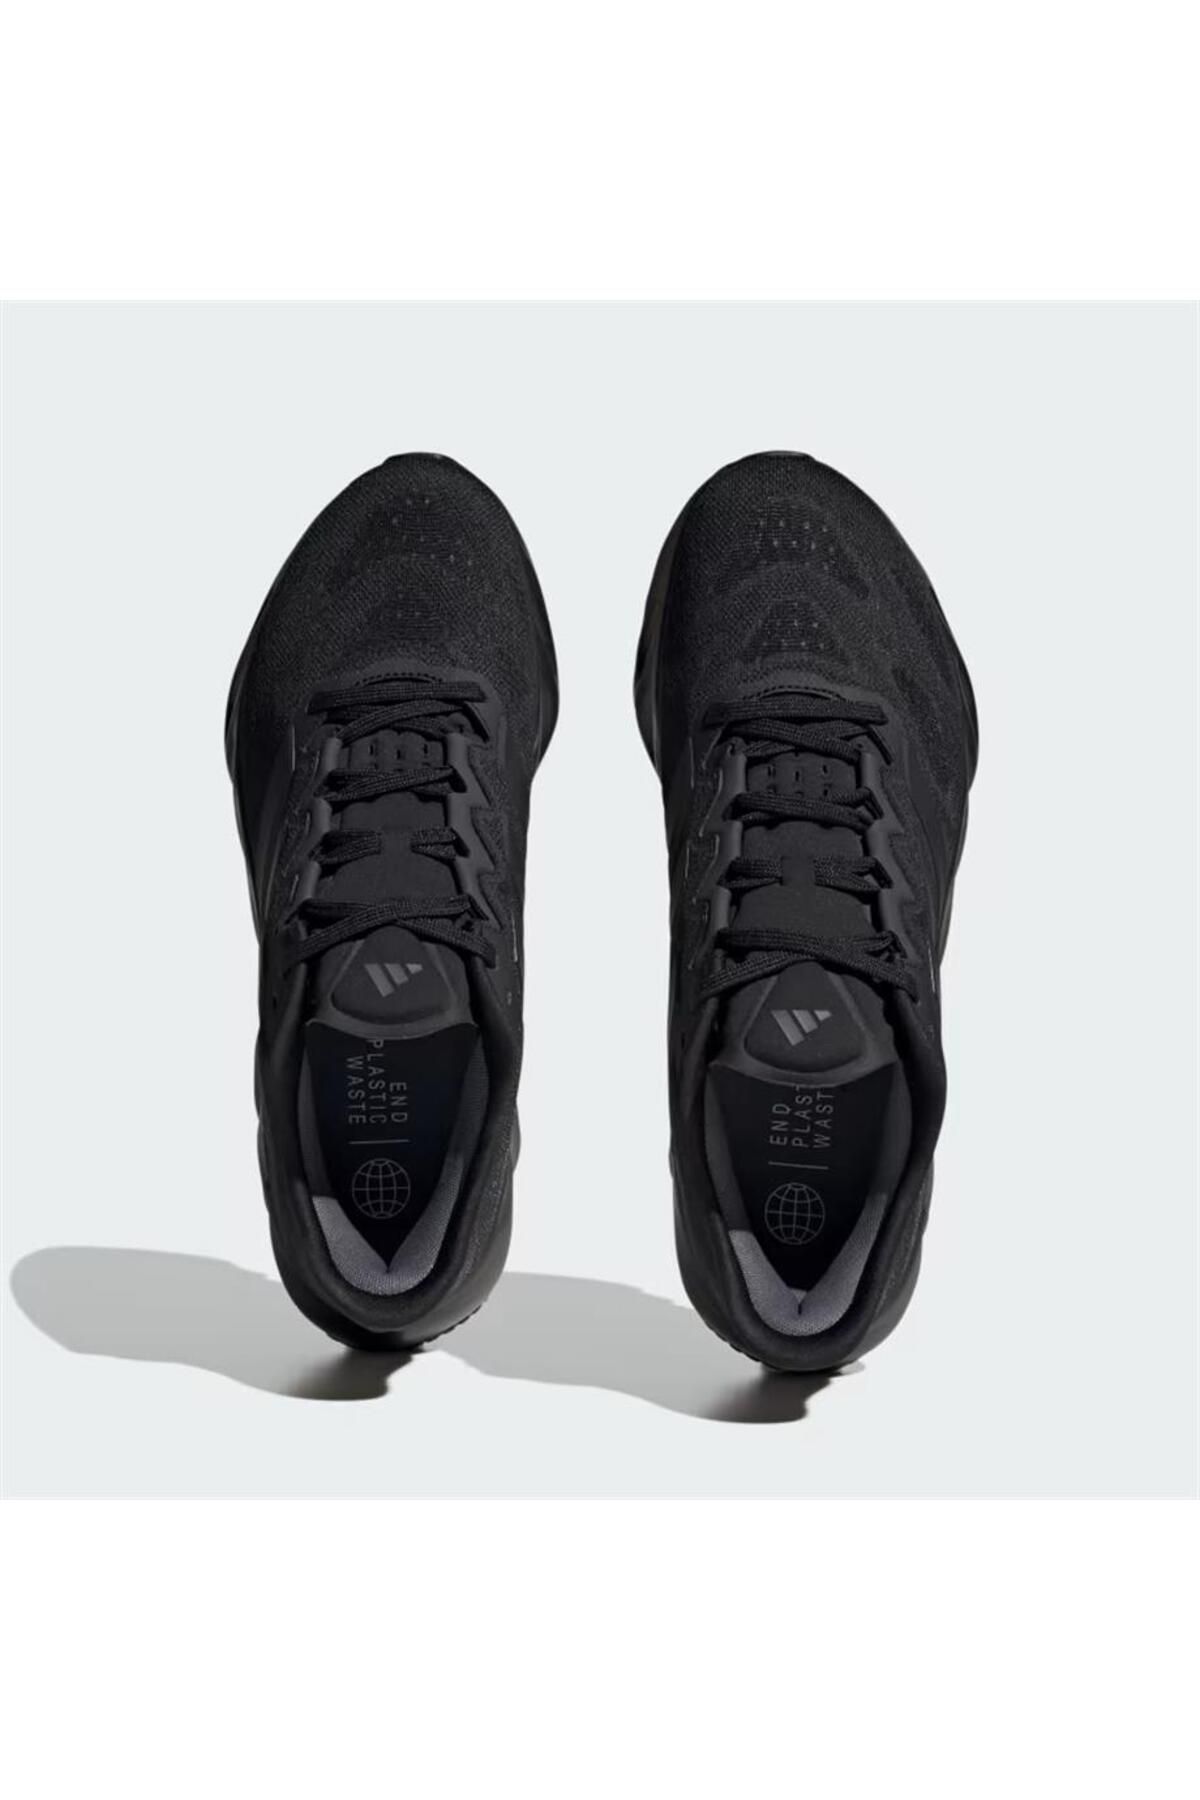 کفش کتانی دویدن مدل SWITCH FWD M مردانه آدیداس Adidas